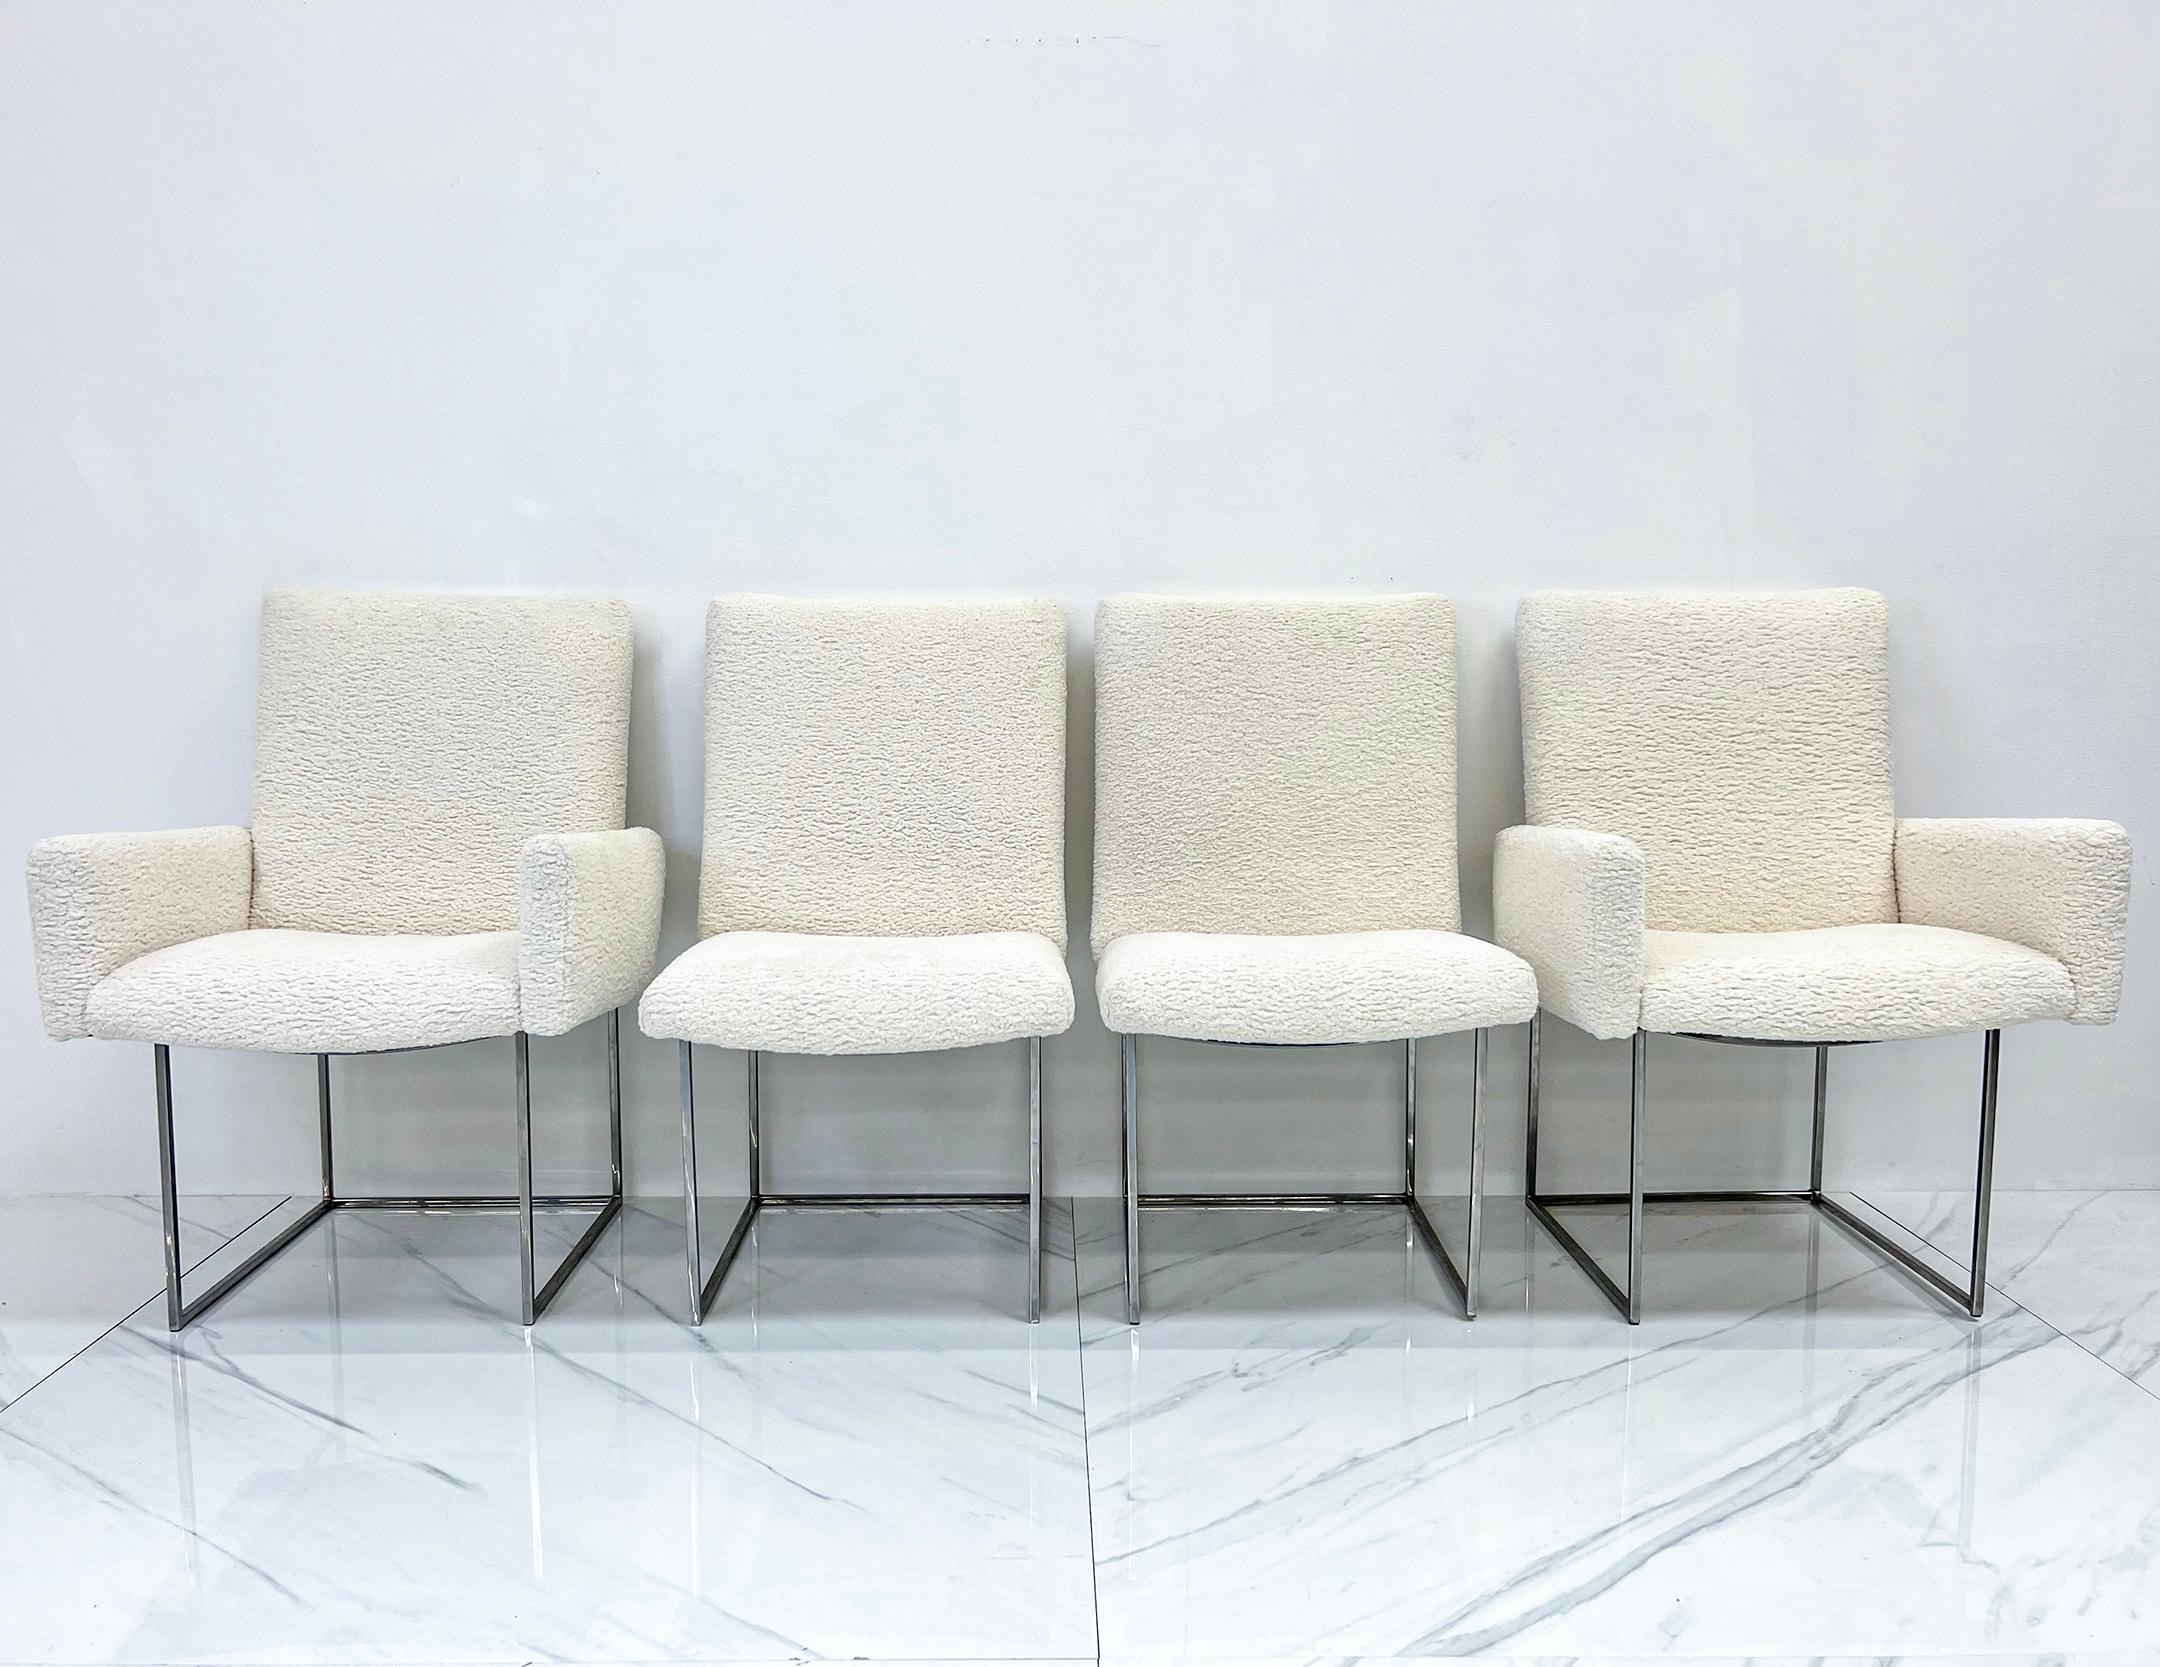 Ces chaises sont magnifiques ! Introduites à l'origine dans les années 1950, les chaises de salle à manger Thin Line de Milo sont un classique du design moderne du milieu du siècle, très apprécié pour son esthétique épurée et minimaliste. Ces